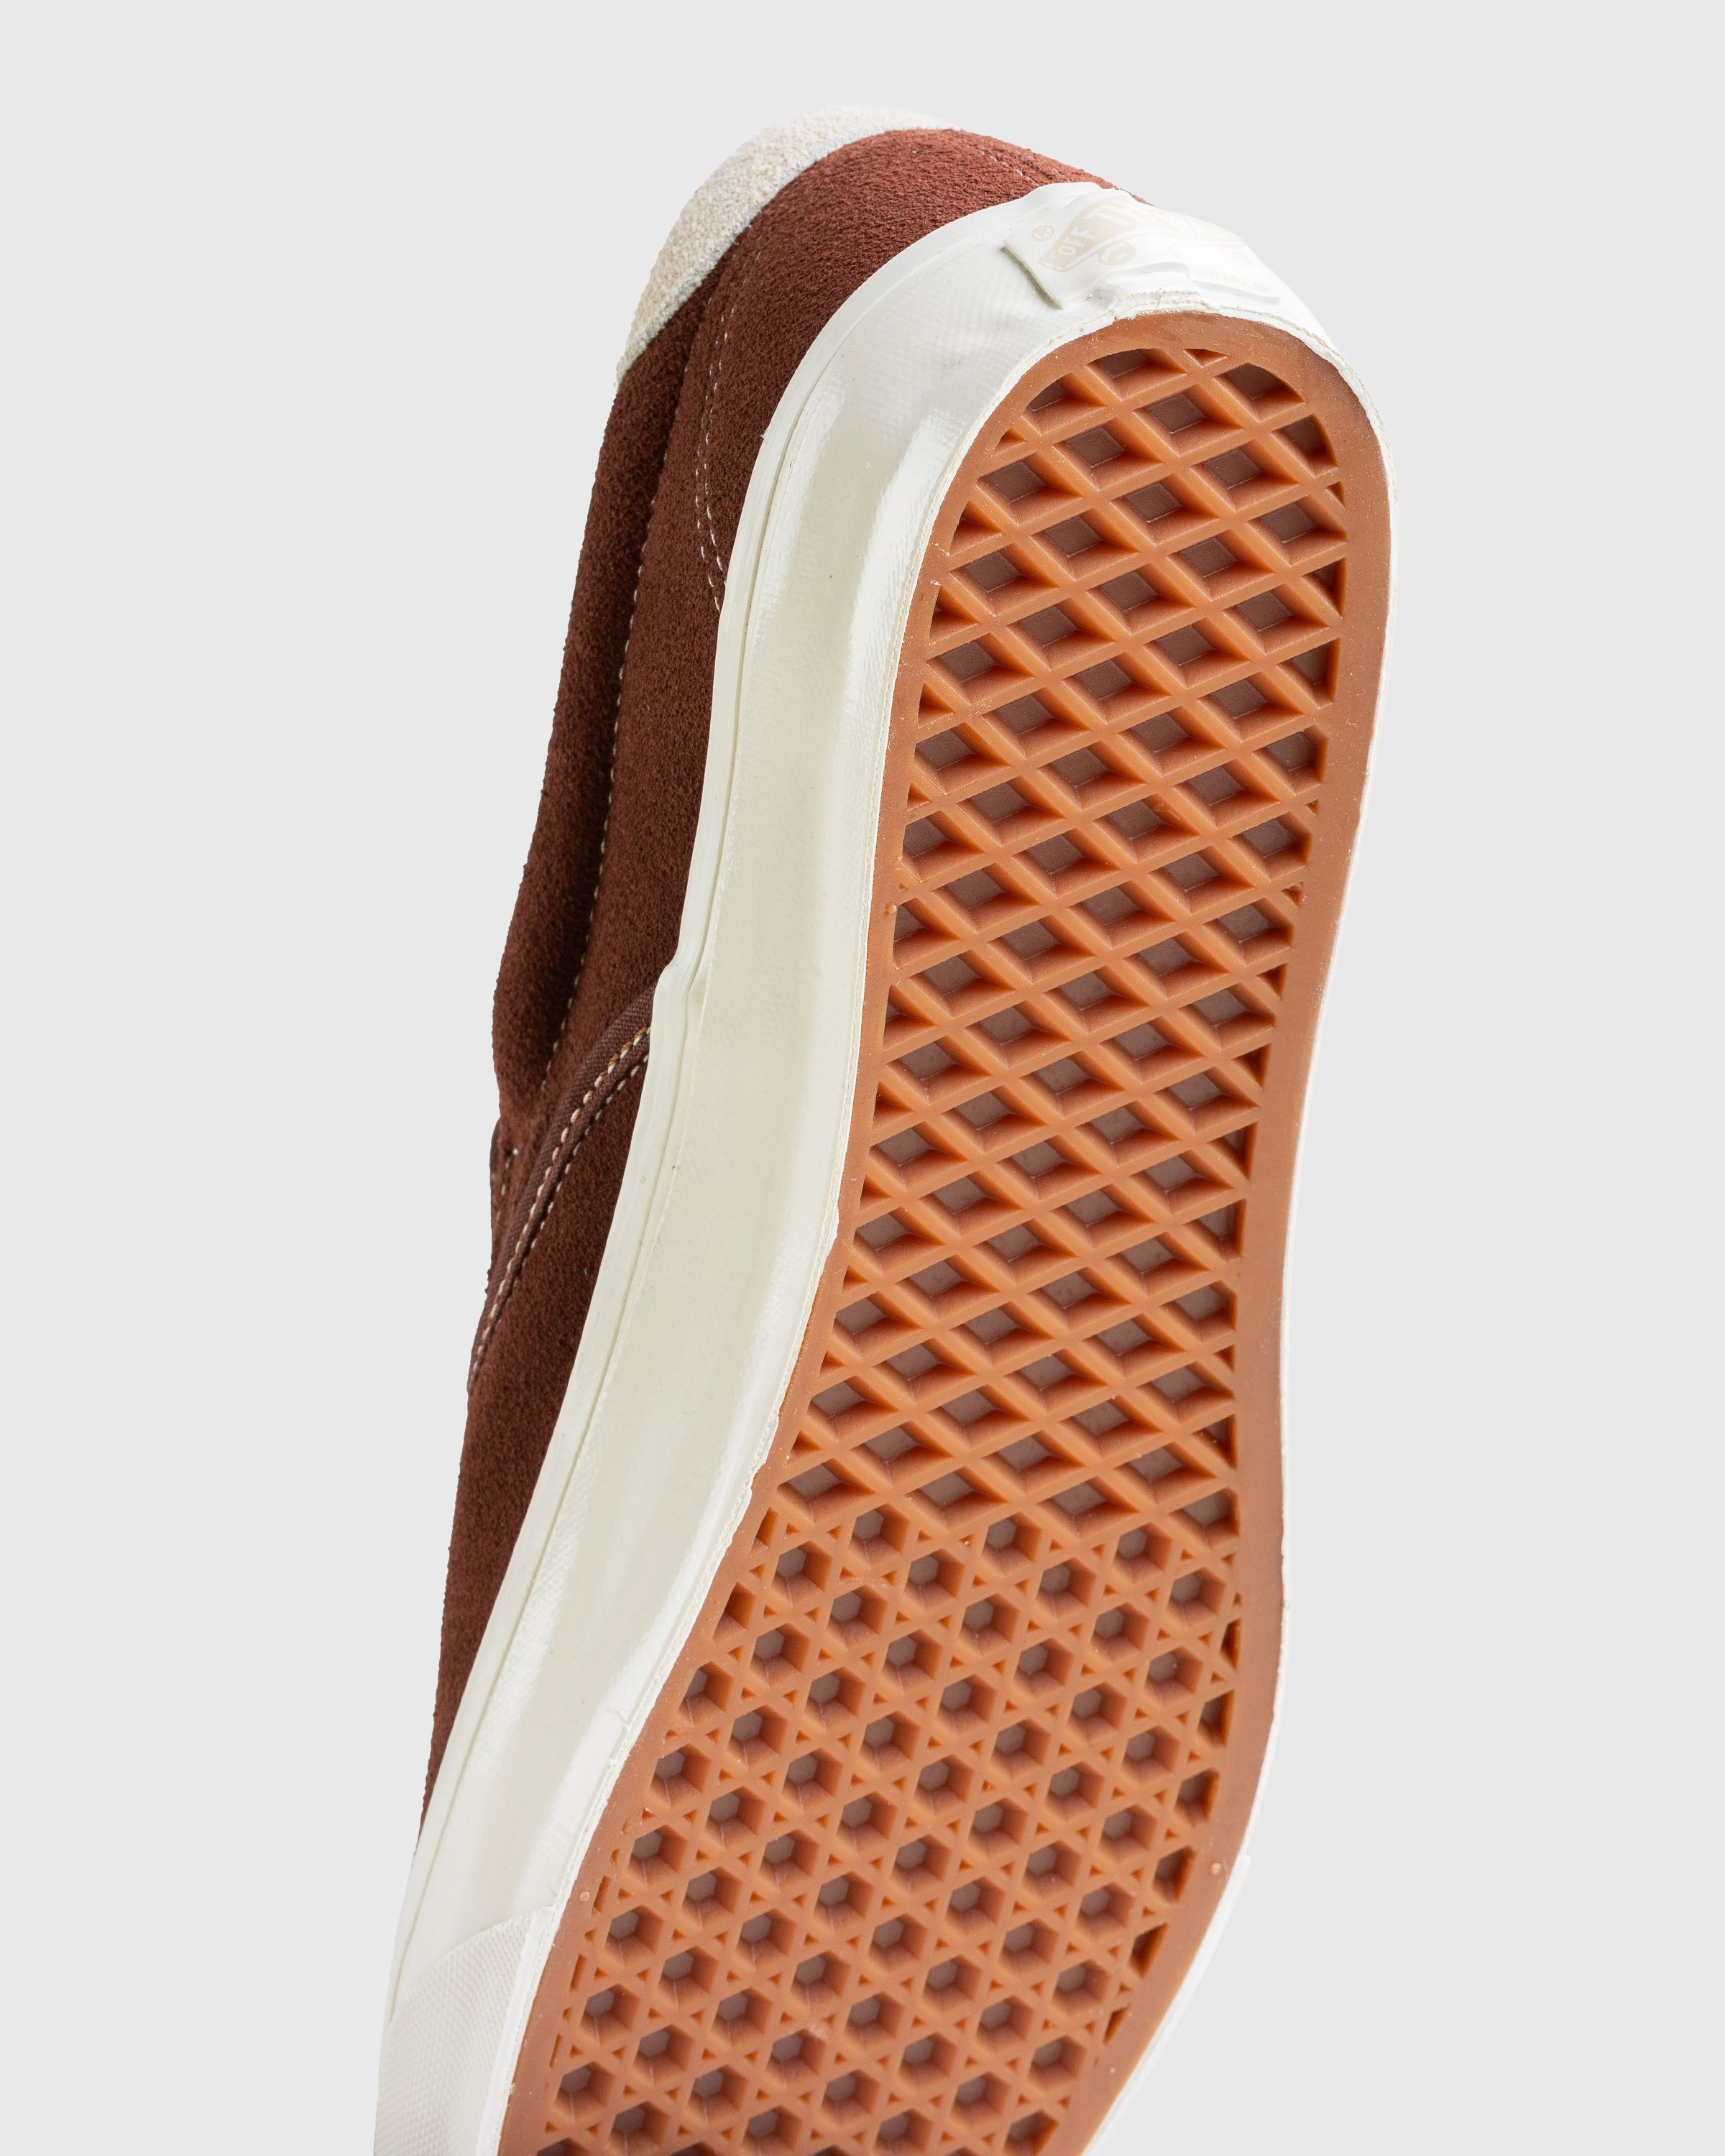 Vans – OG Slip-On 59 LX Suede Brown - Sneakers - Brown - Image 6